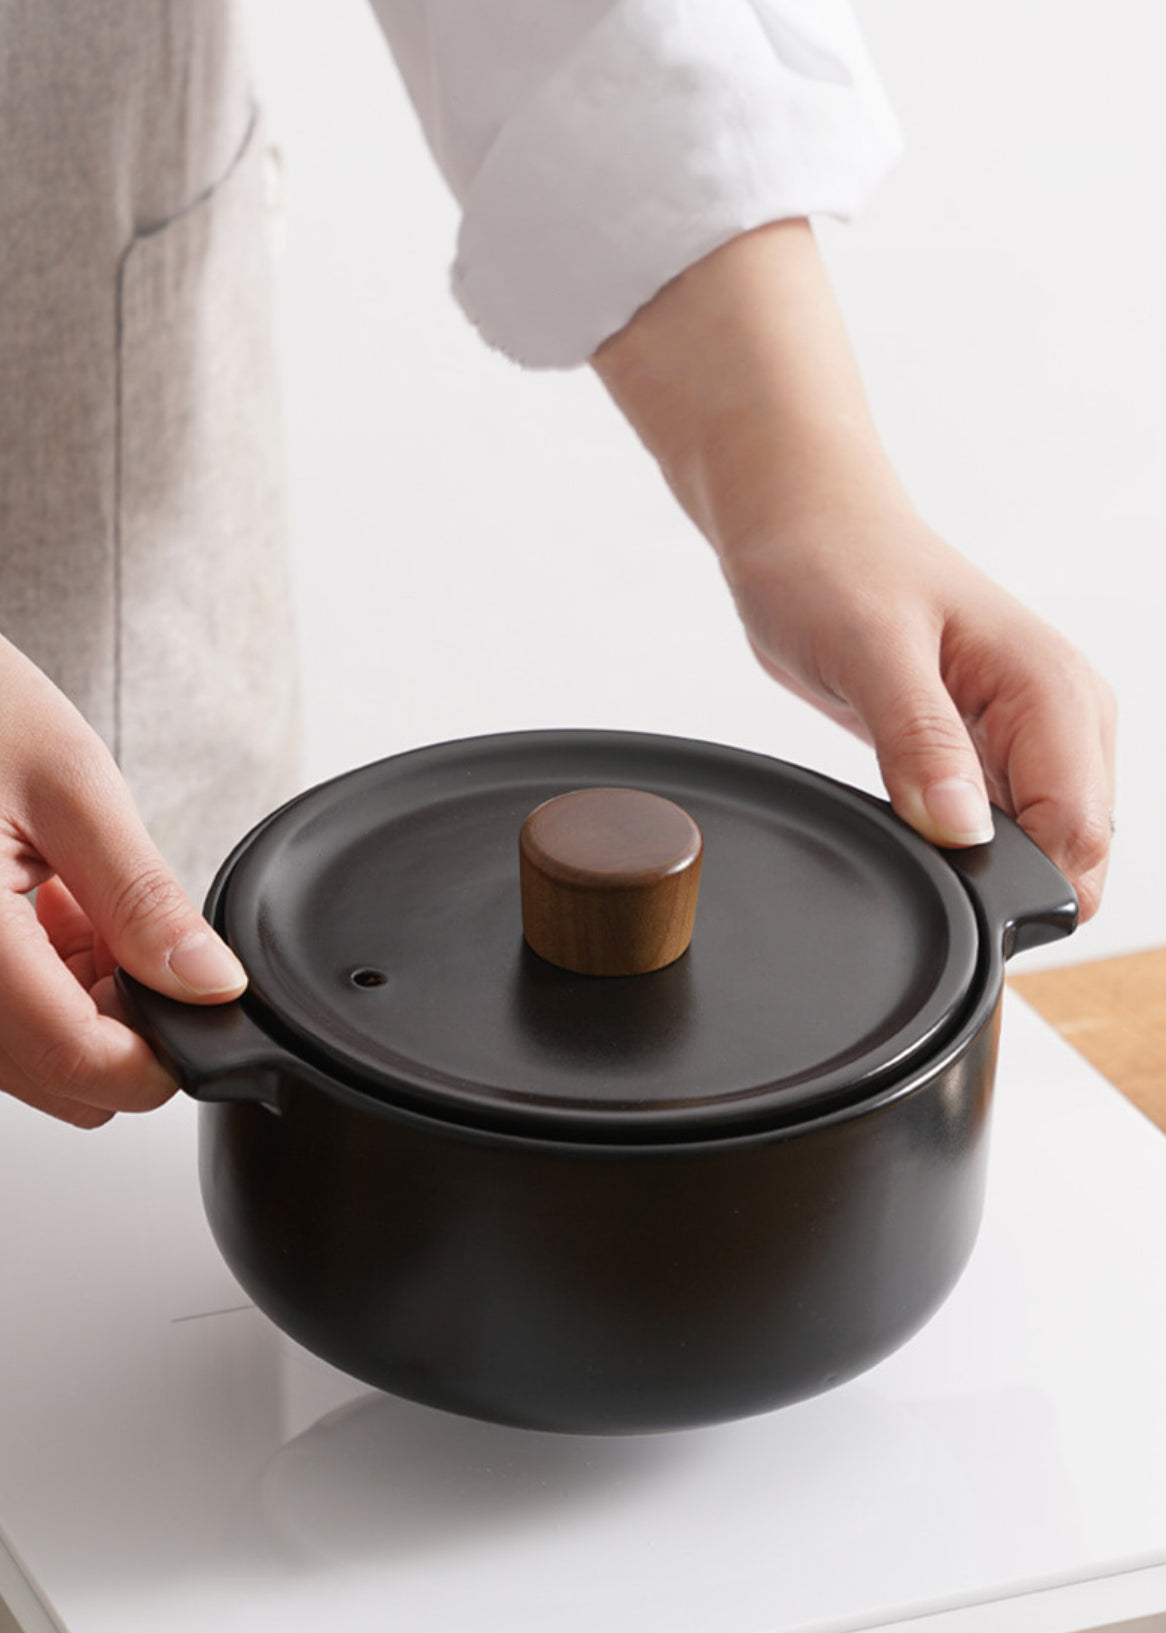 Our Review of Korean Pot: Ttukbaegi Pot With Lid 뚝배기, by Top Reviewing